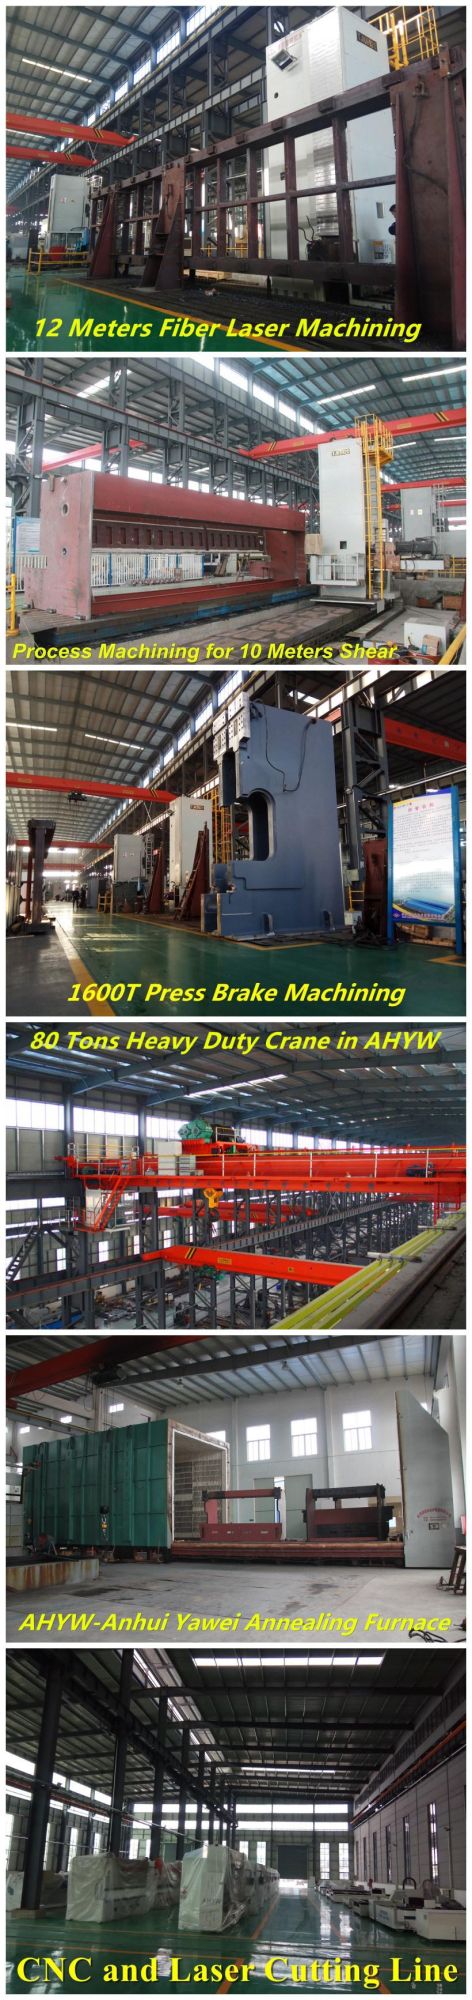 Heavy Duty Metal Cutting Shears Machine From Anhui Yawei with Ahyw Logo for Metal Sheet Cutting